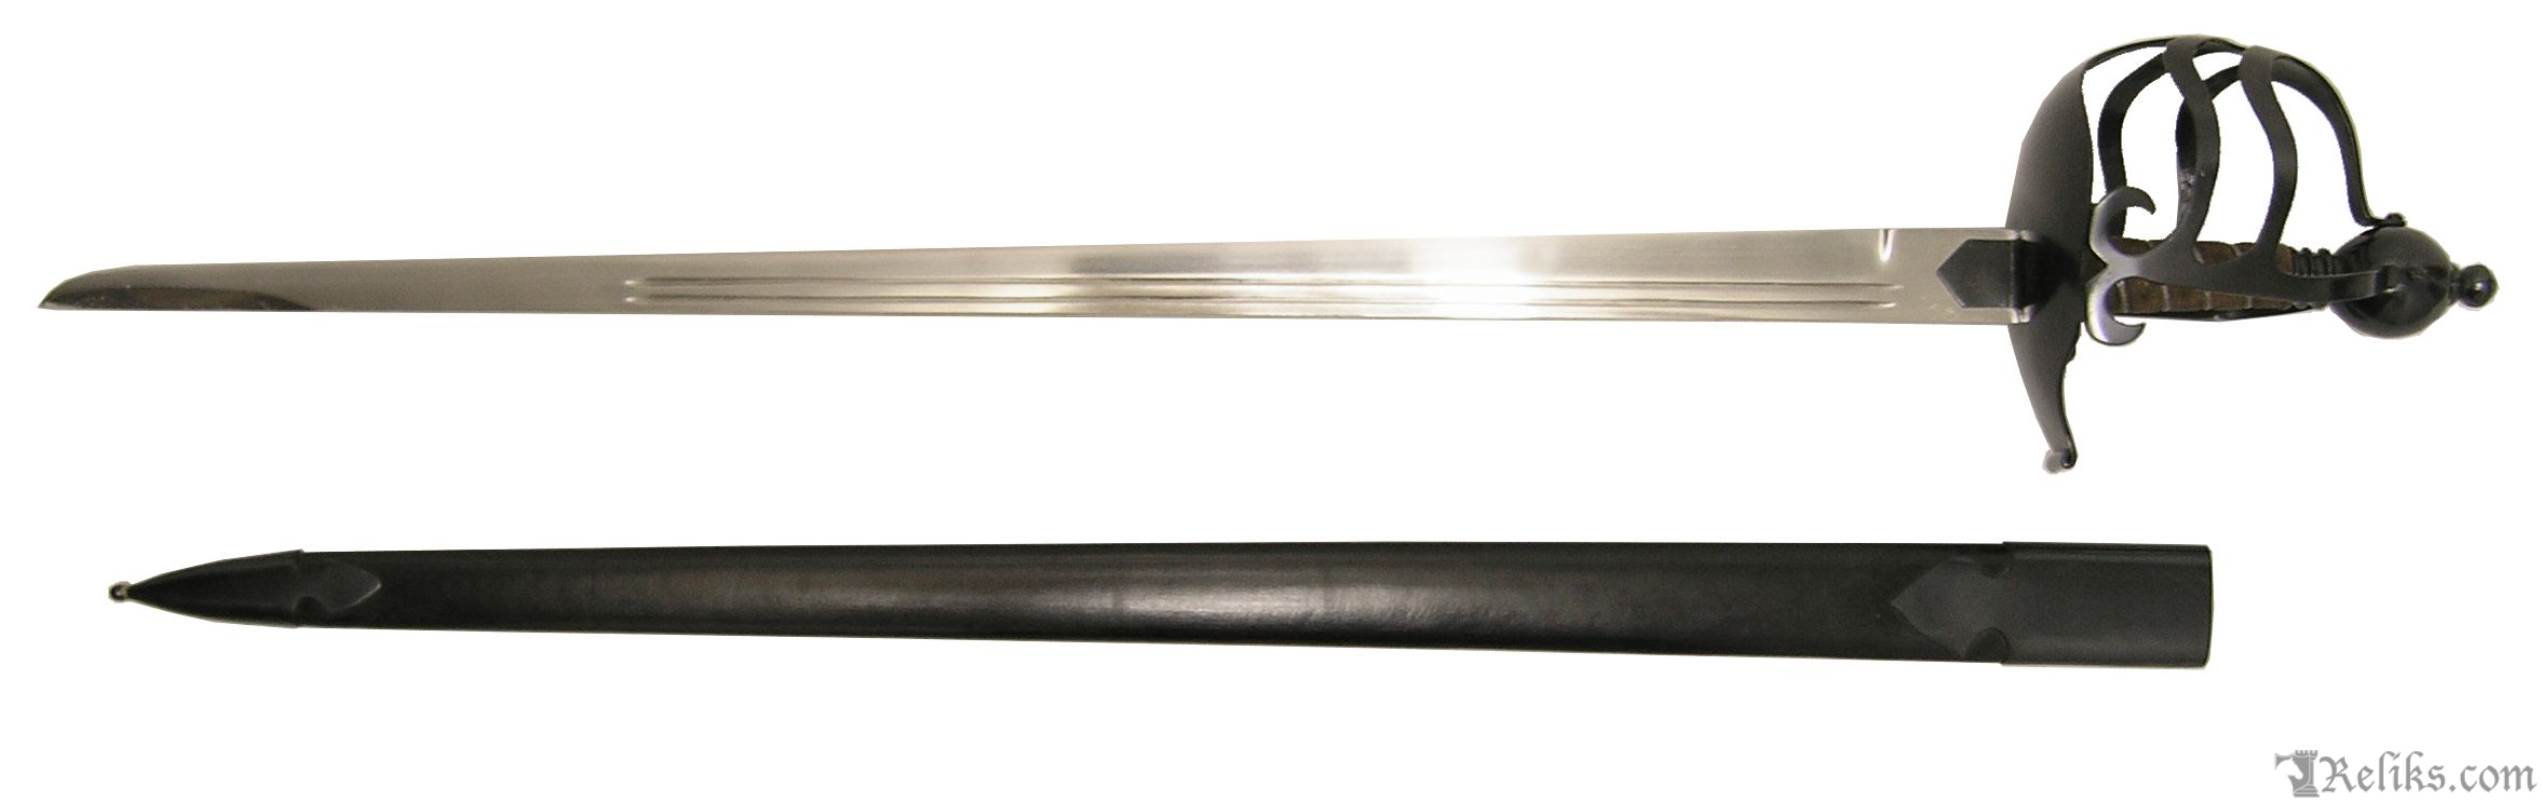 mortuary hilt sword